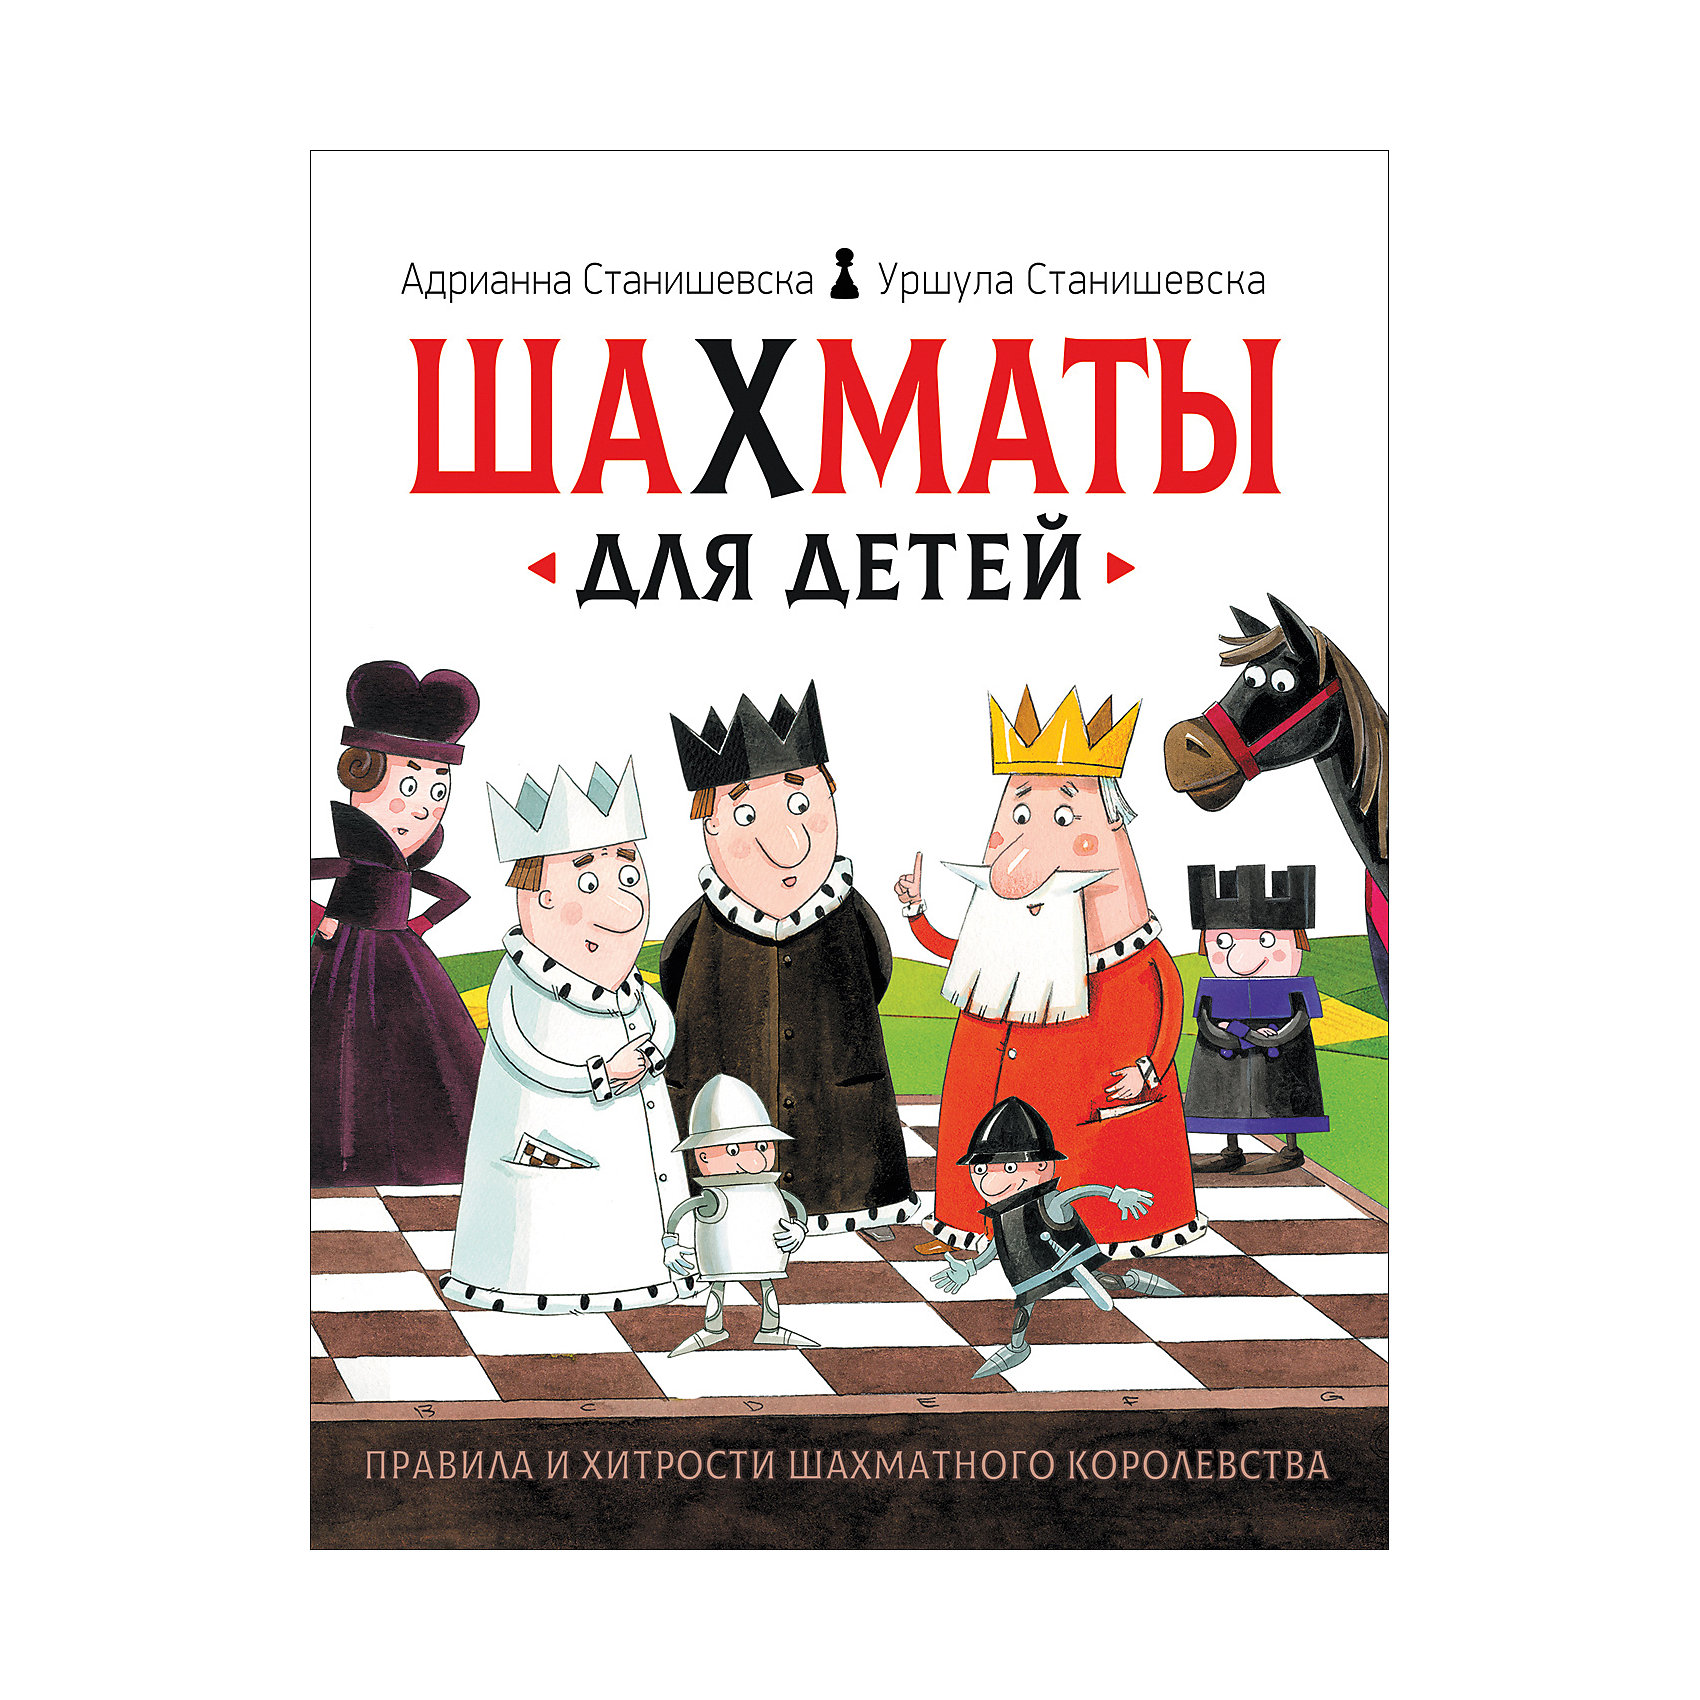 фото Книга "Шахматы для детей", Станишевска А. и У. Росмэн